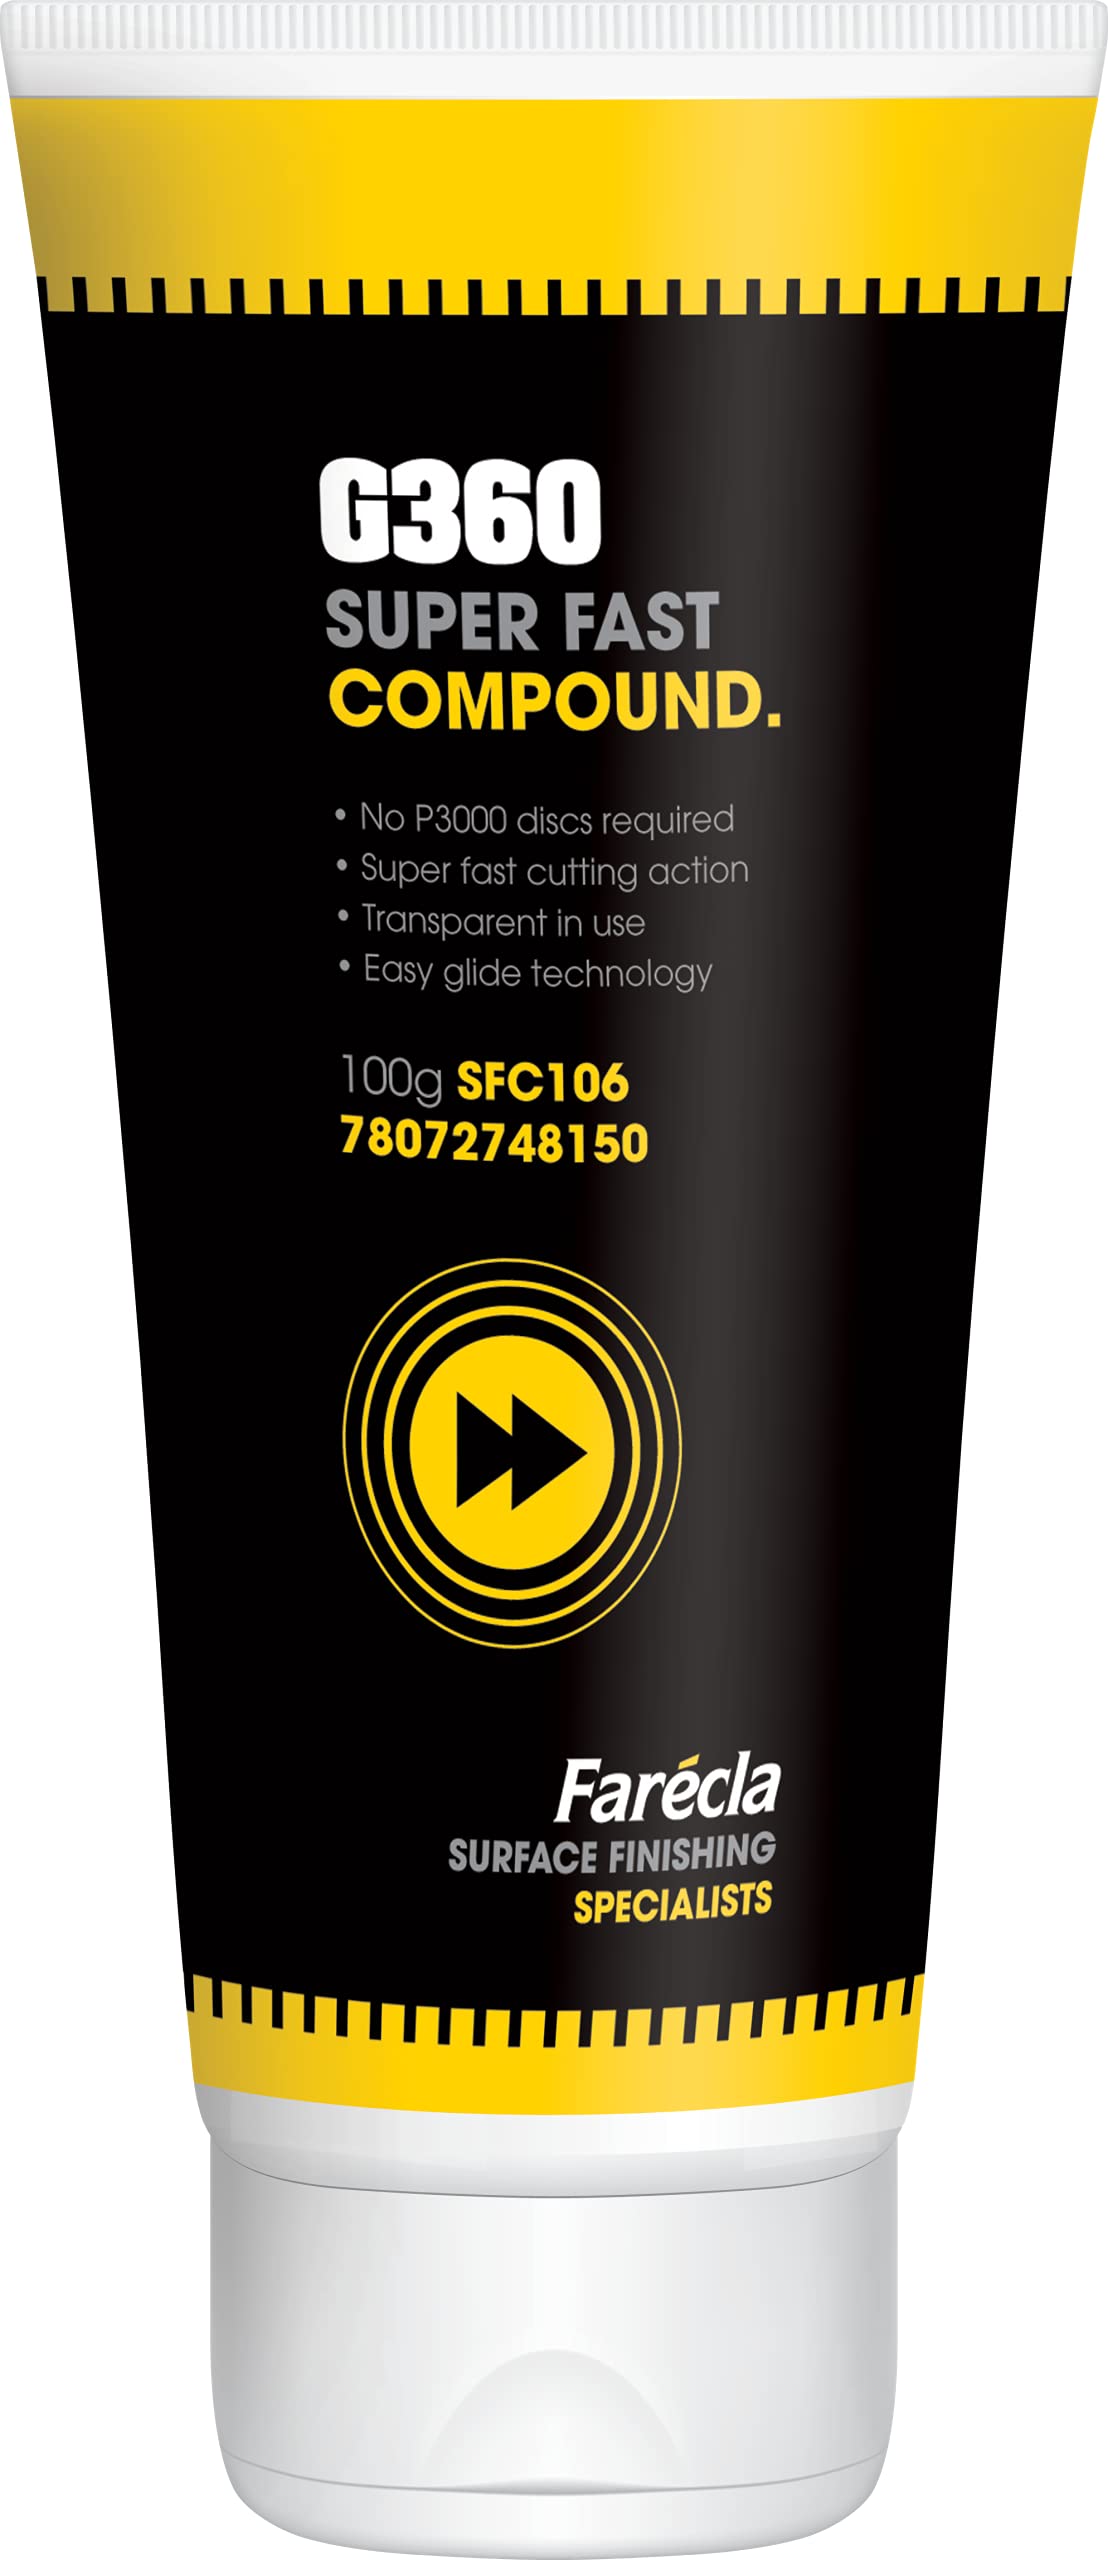 Farécla SFC106 G360 Super Fast Compound 100 g Tube von Farecla